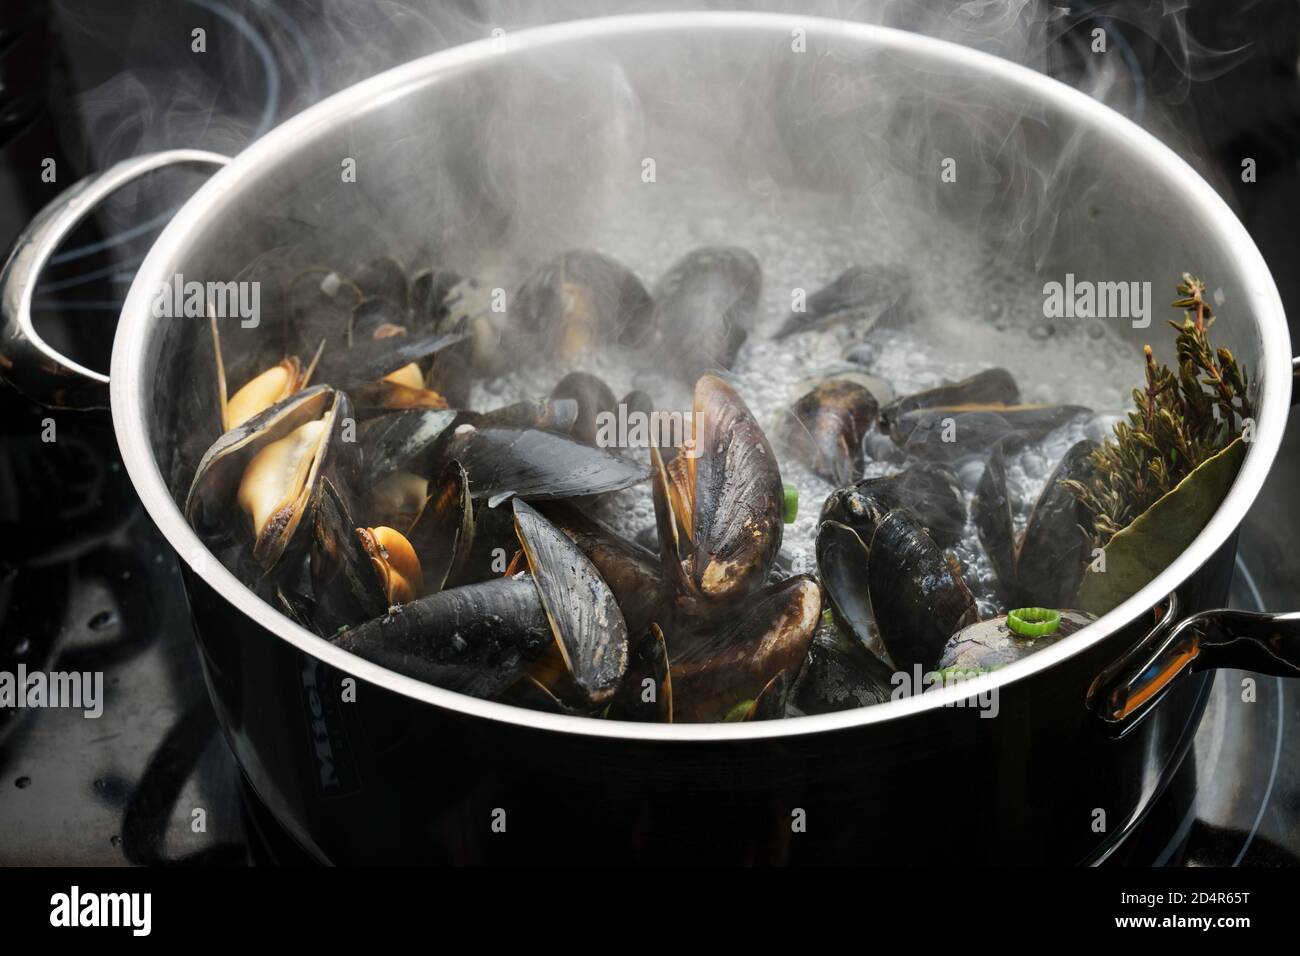 Dampfende blaue Muscheln in einem Stahltopf mit kochender Brühe, Zwiebeln und Kräutern auf einem schwarzen Herd, Kochen ein köstliches Meeresfrüchte-Rezept, ausgewählte Fokus, schmal Stockfoto